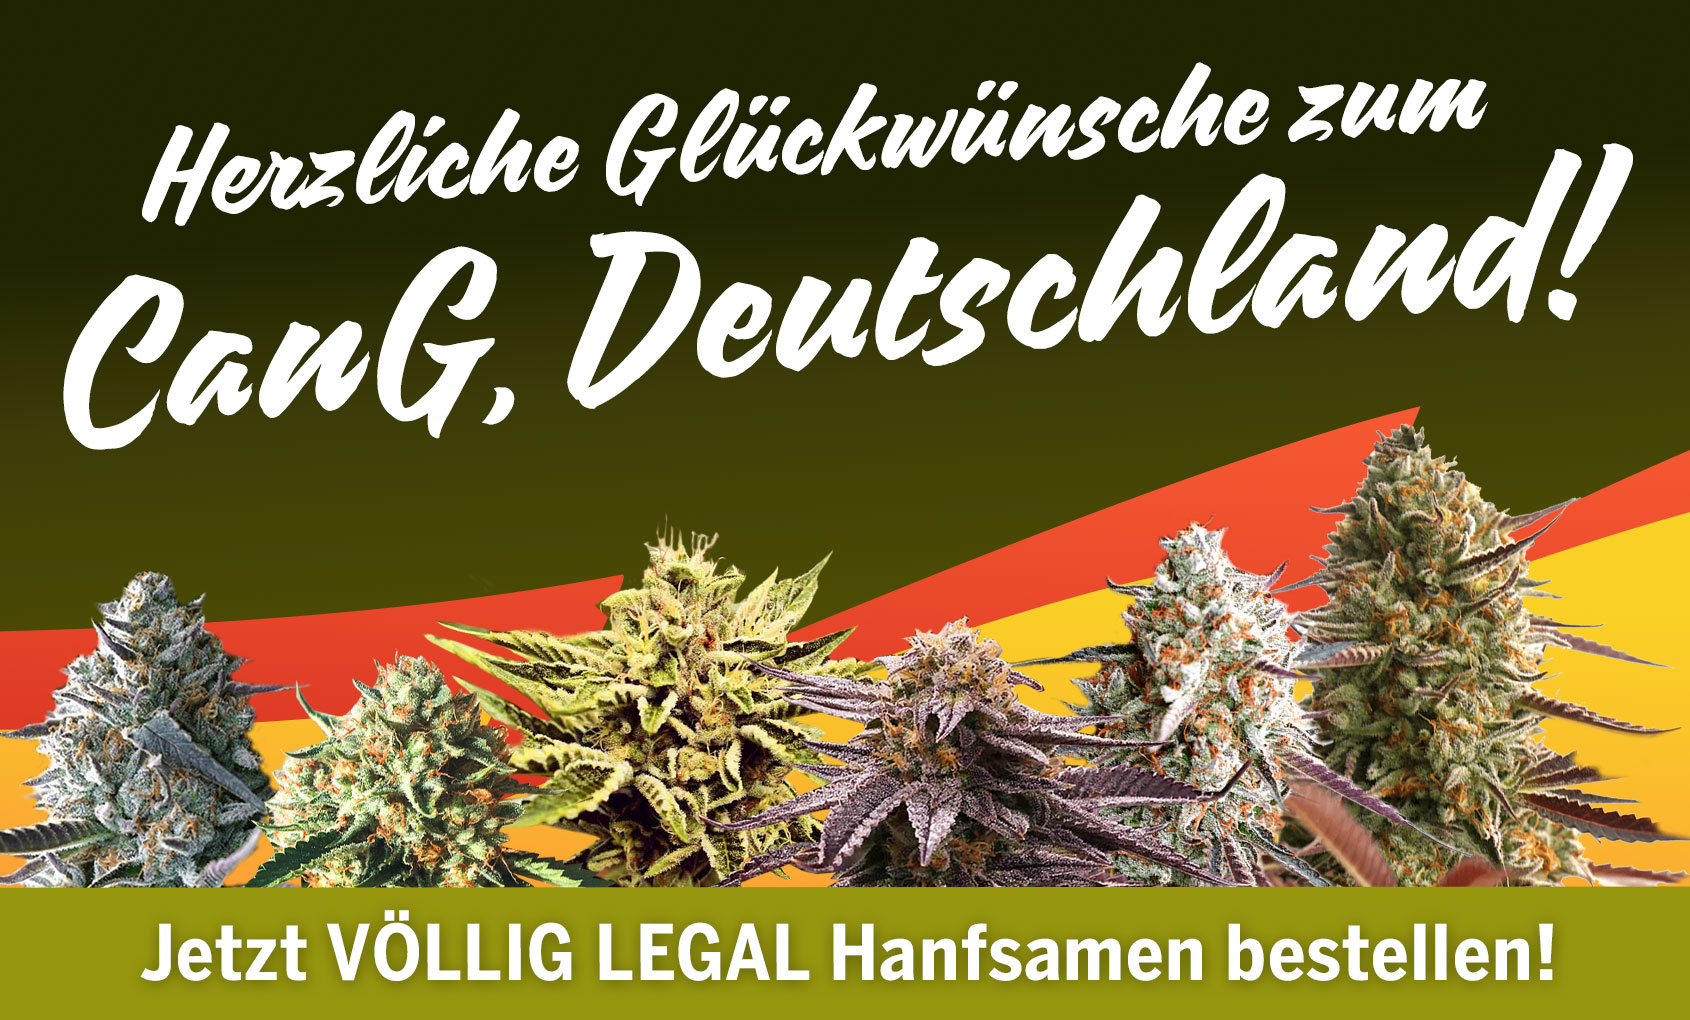 Legal Cannabis Samen bestellen!